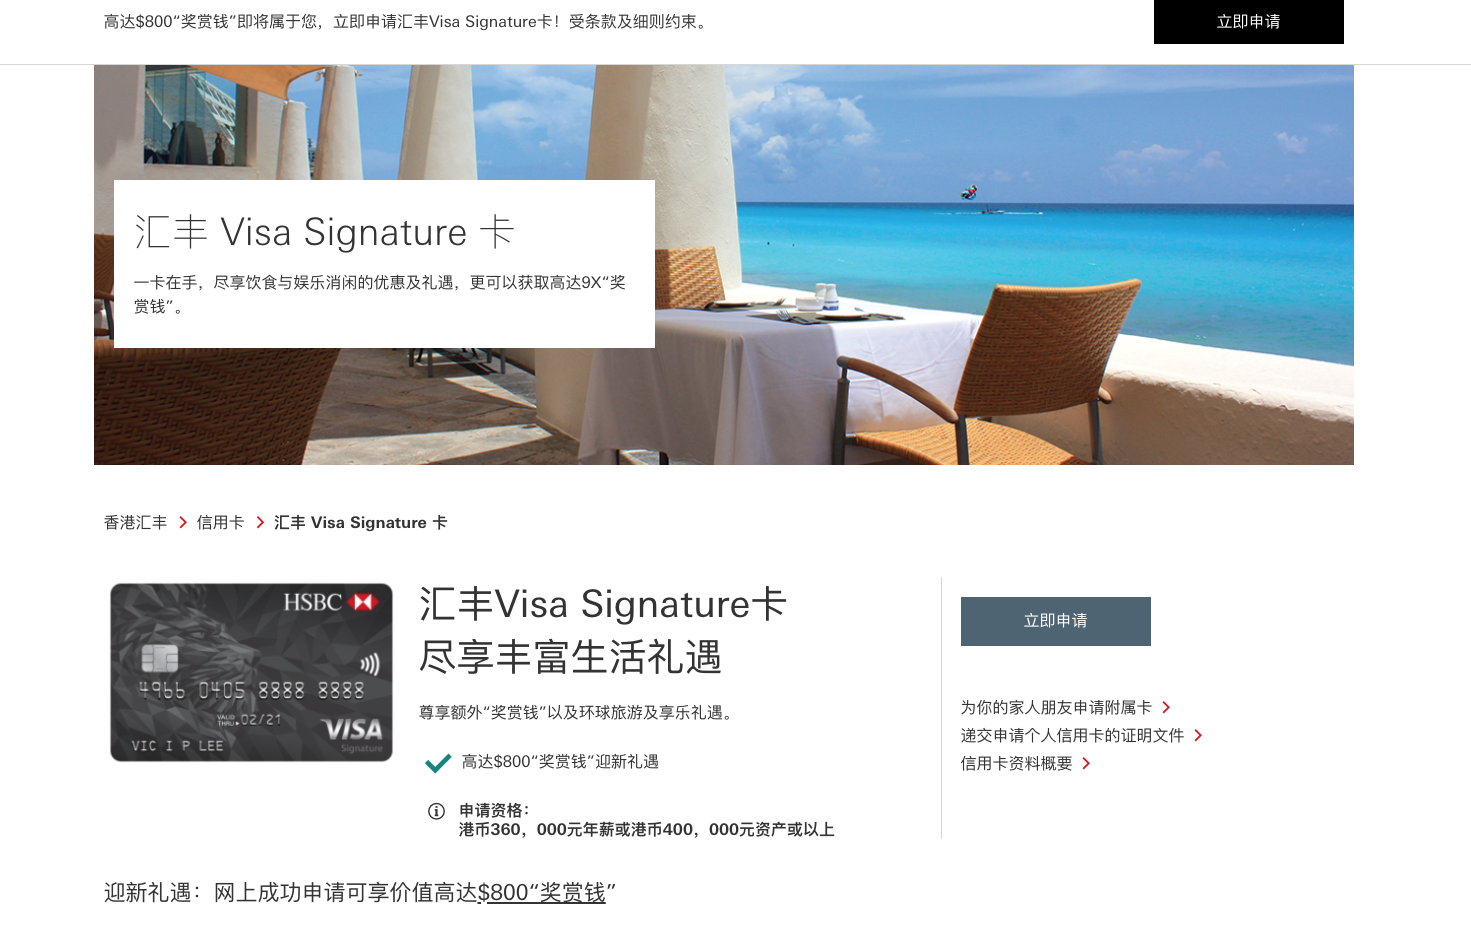 HKBC HK Visa Signature¿